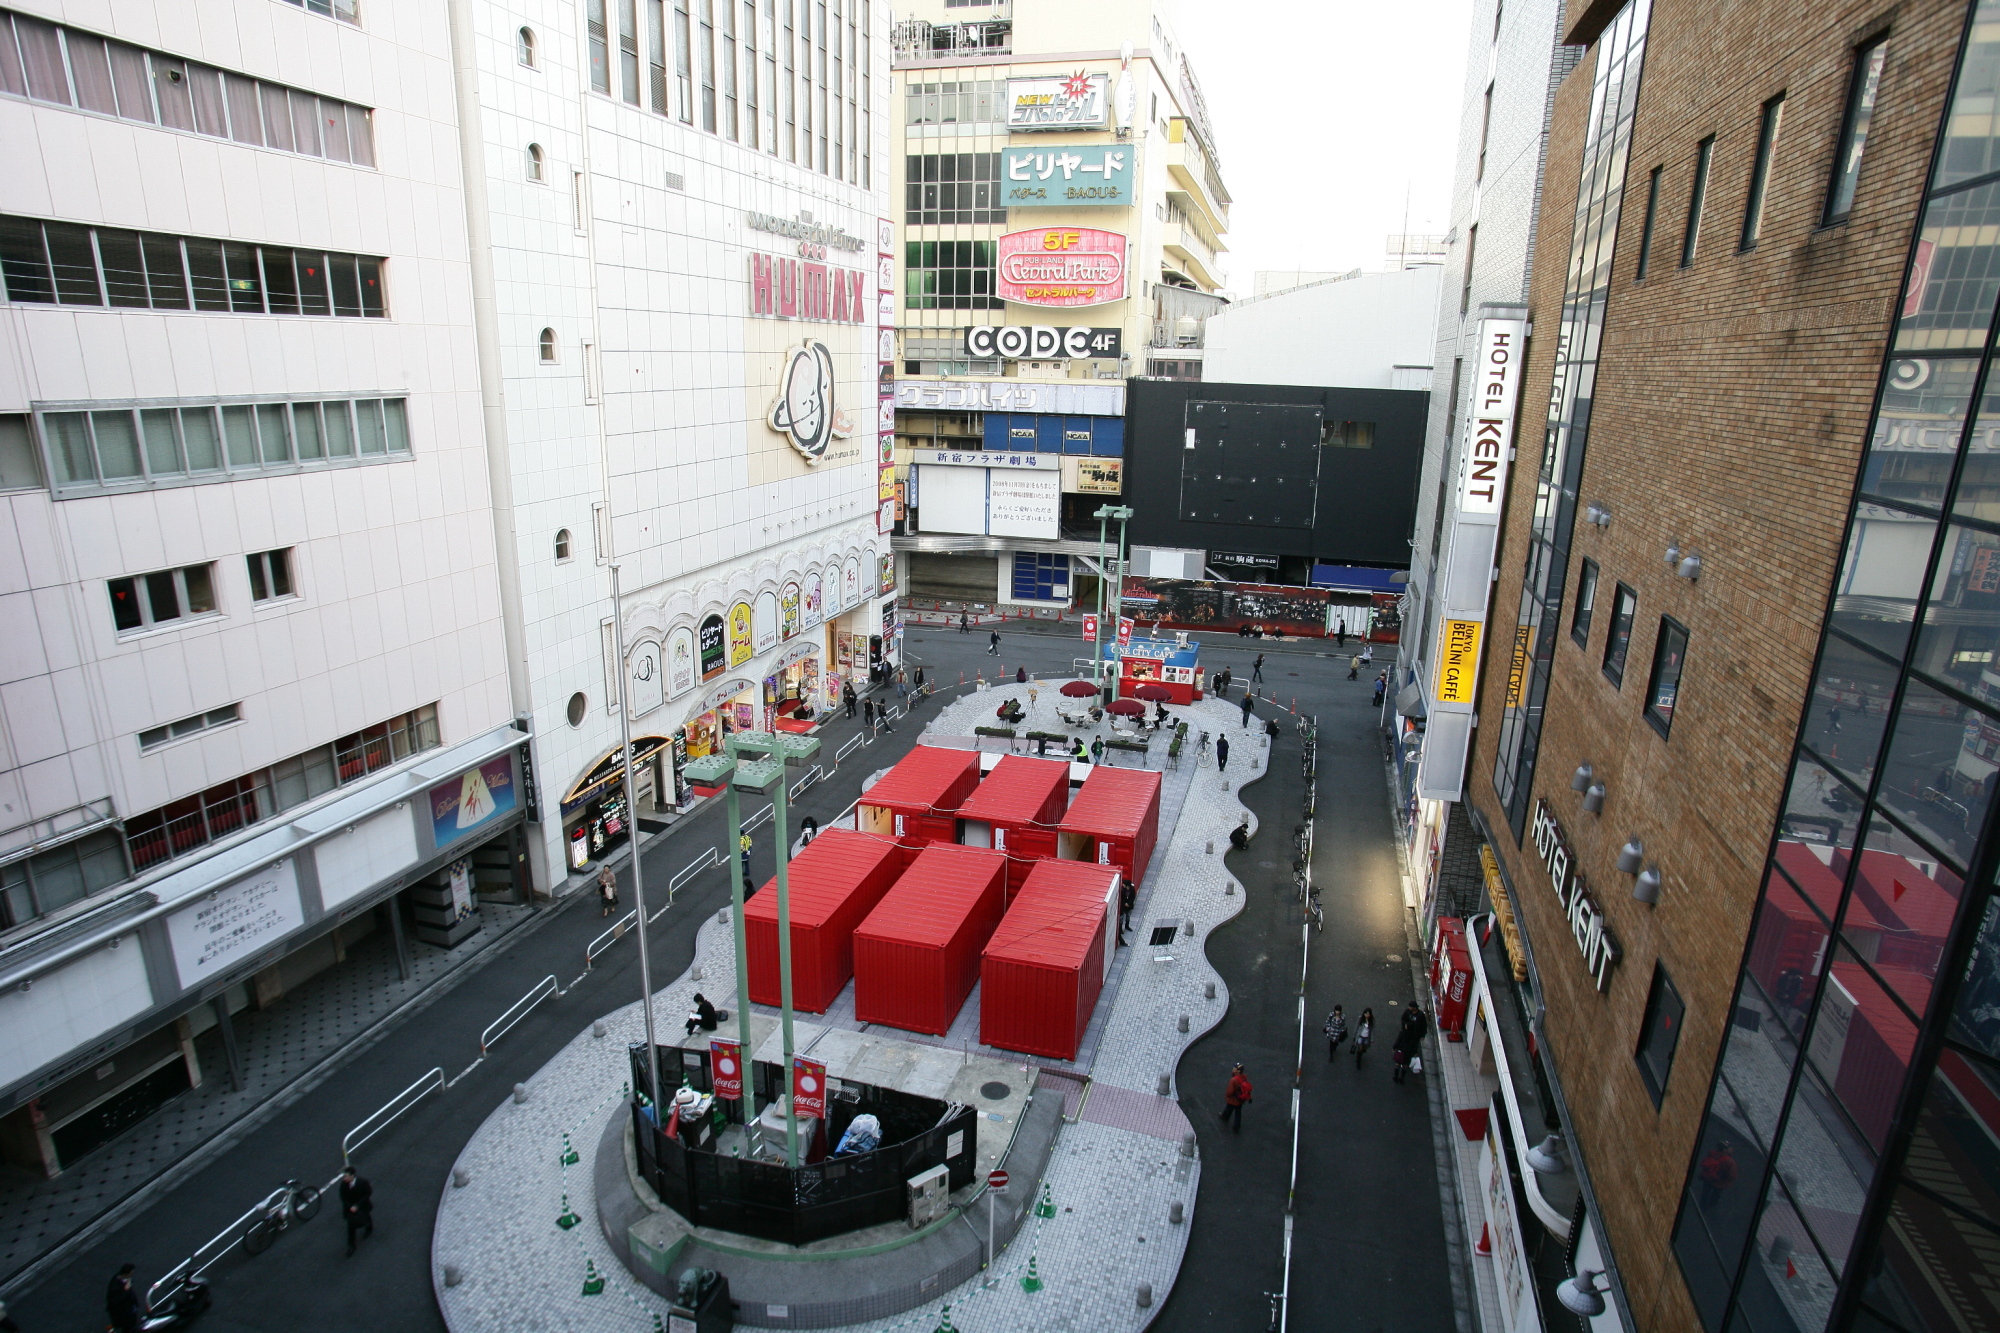 歌舞伎町アートサイト The Challenge of Public Media Art パブリックメディアアートの挑戦